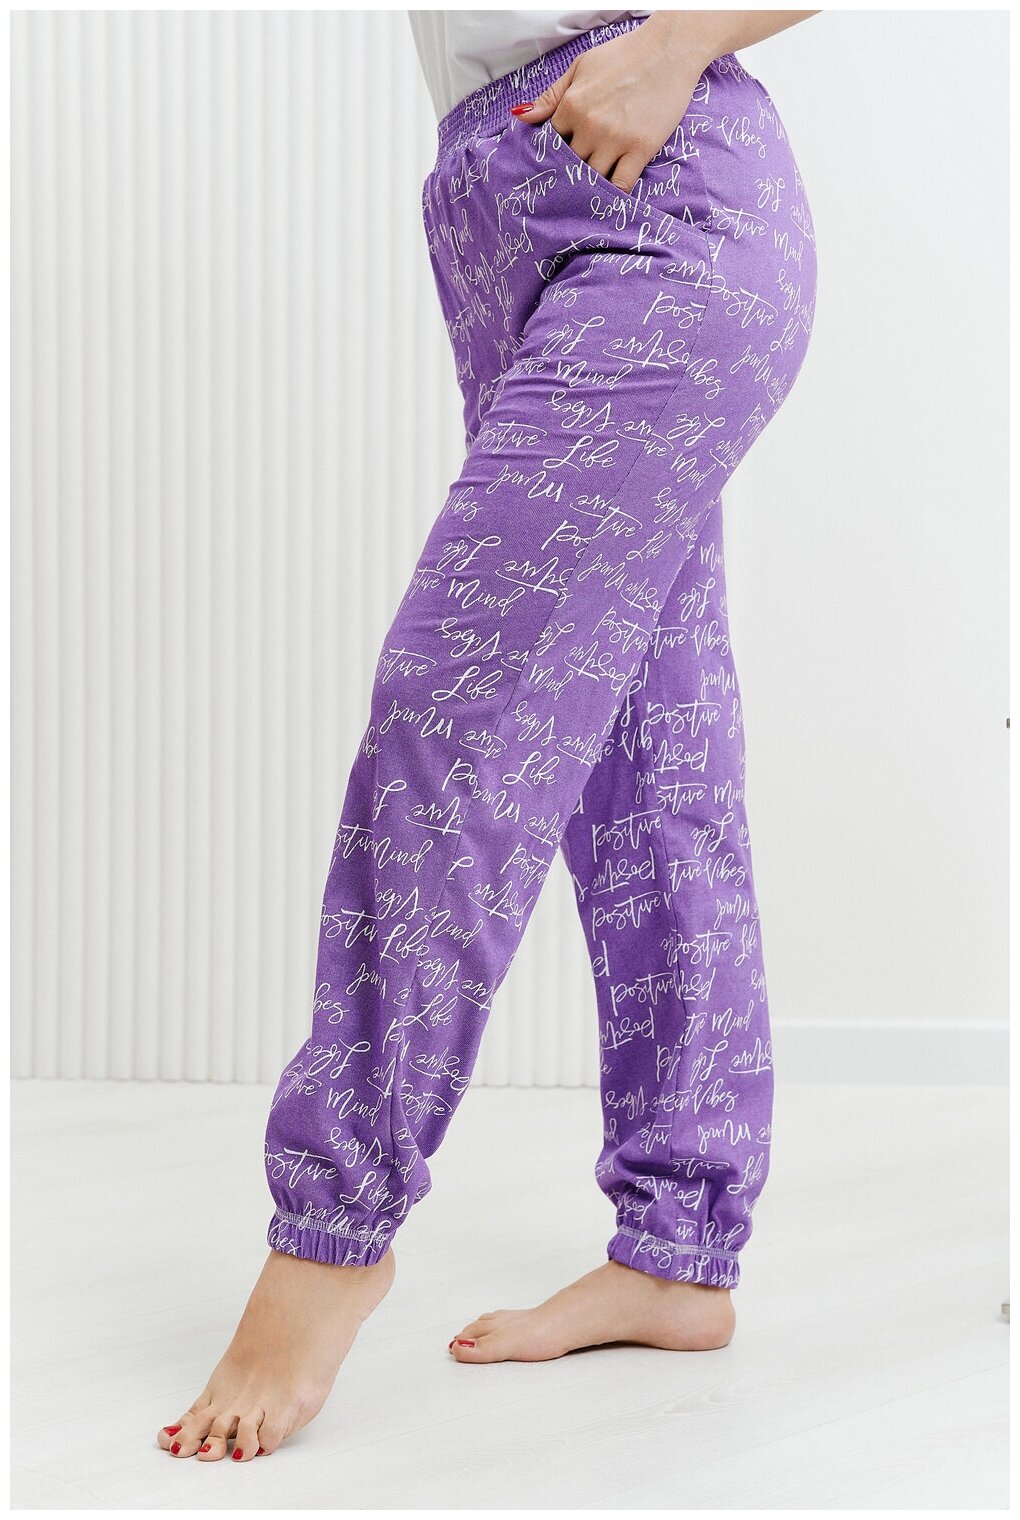 Брюки Натали, без рукава, пояс на резинке, карманы, размер 54, фиолетовый - фотография № 12